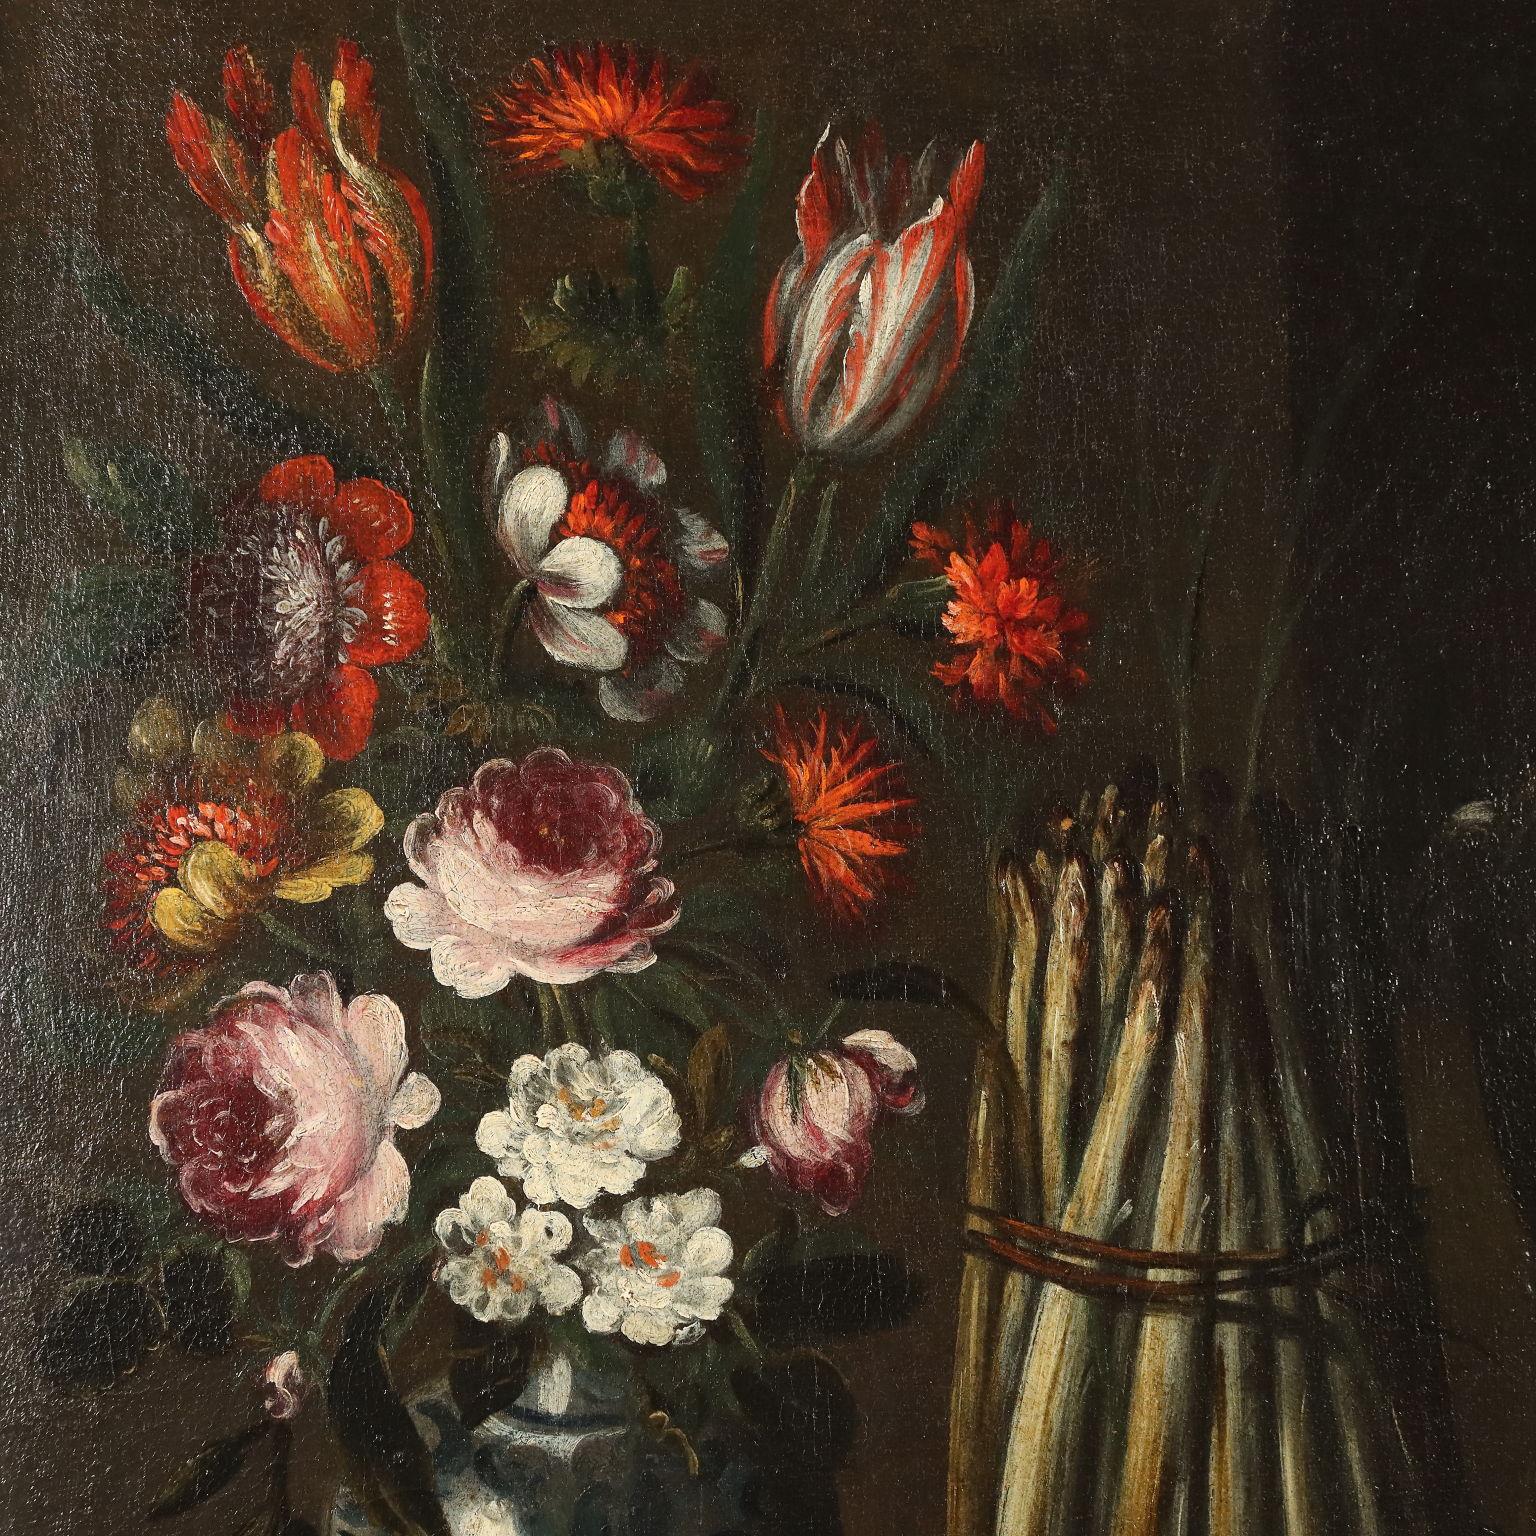 Öl auf Leinwand.
Die Komposition sieht in ihrem Zentrum  ein hängender Hase, flankiert von einer Wachtel und einer Taube; rechts ein Weidenkorb mit Kastanien und Tannenzweigen; links ein Spargelbündel und eine Vase mit bunten Blumen,  deren